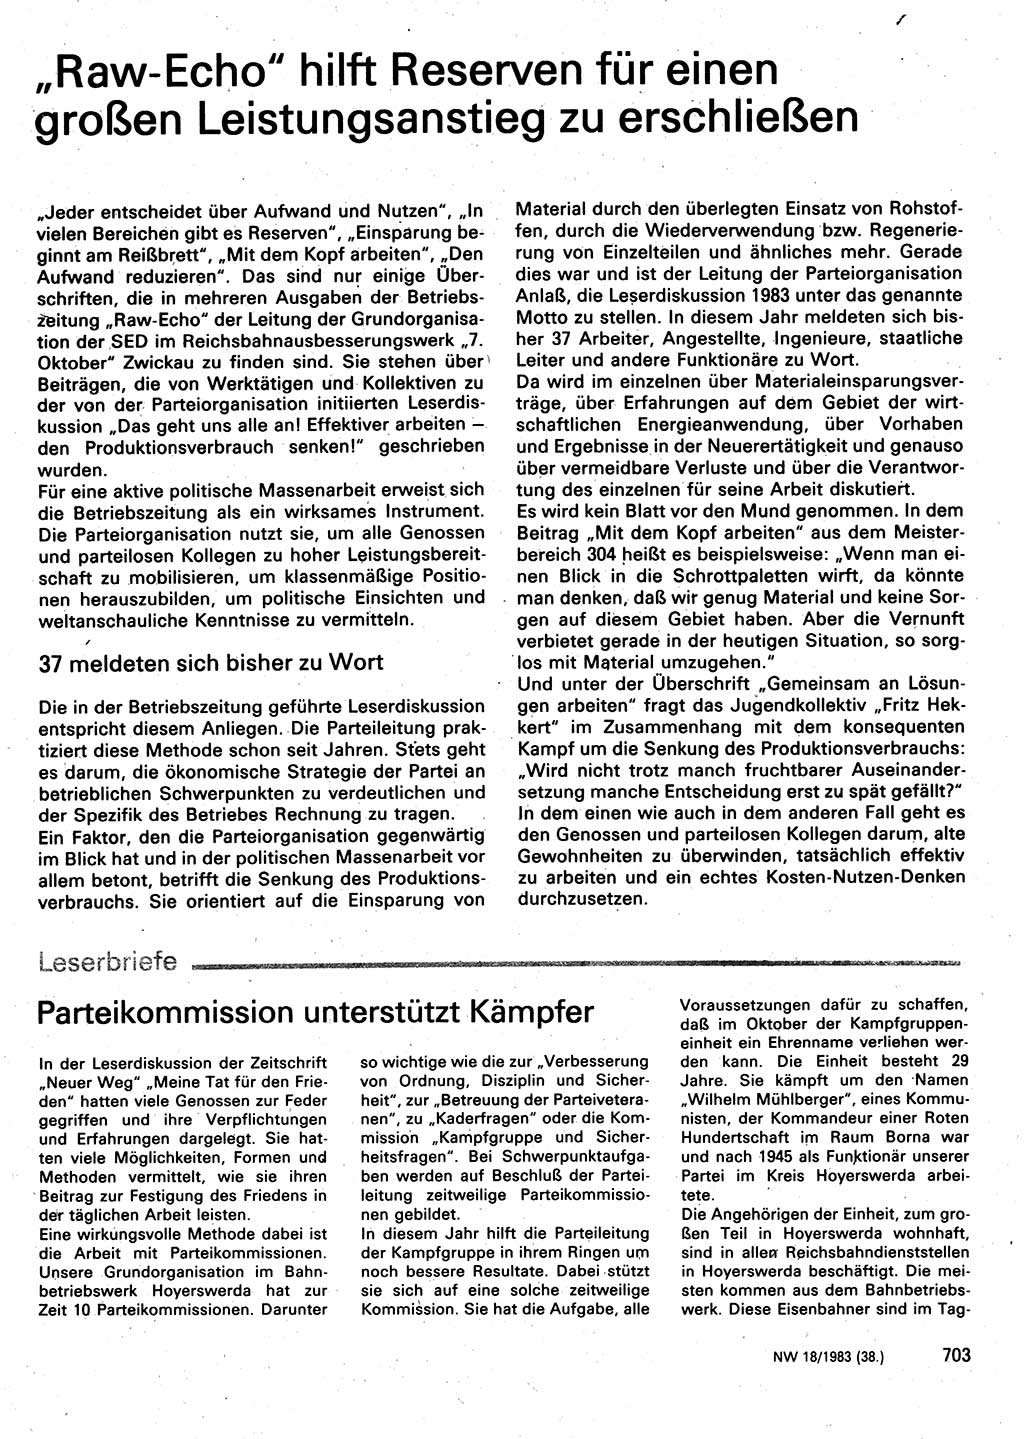 Neuer Weg (NW), Organ des Zentralkomitees (ZK) der SED (Sozialistische Einheitspartei Deutschlands) für Fragen des Parteilebens, 38. Jahrgang [Deutsche Demokratische Republik (DDR)] 1983, Seite 703 (NW ZK SED DDR 1983, S. 703)